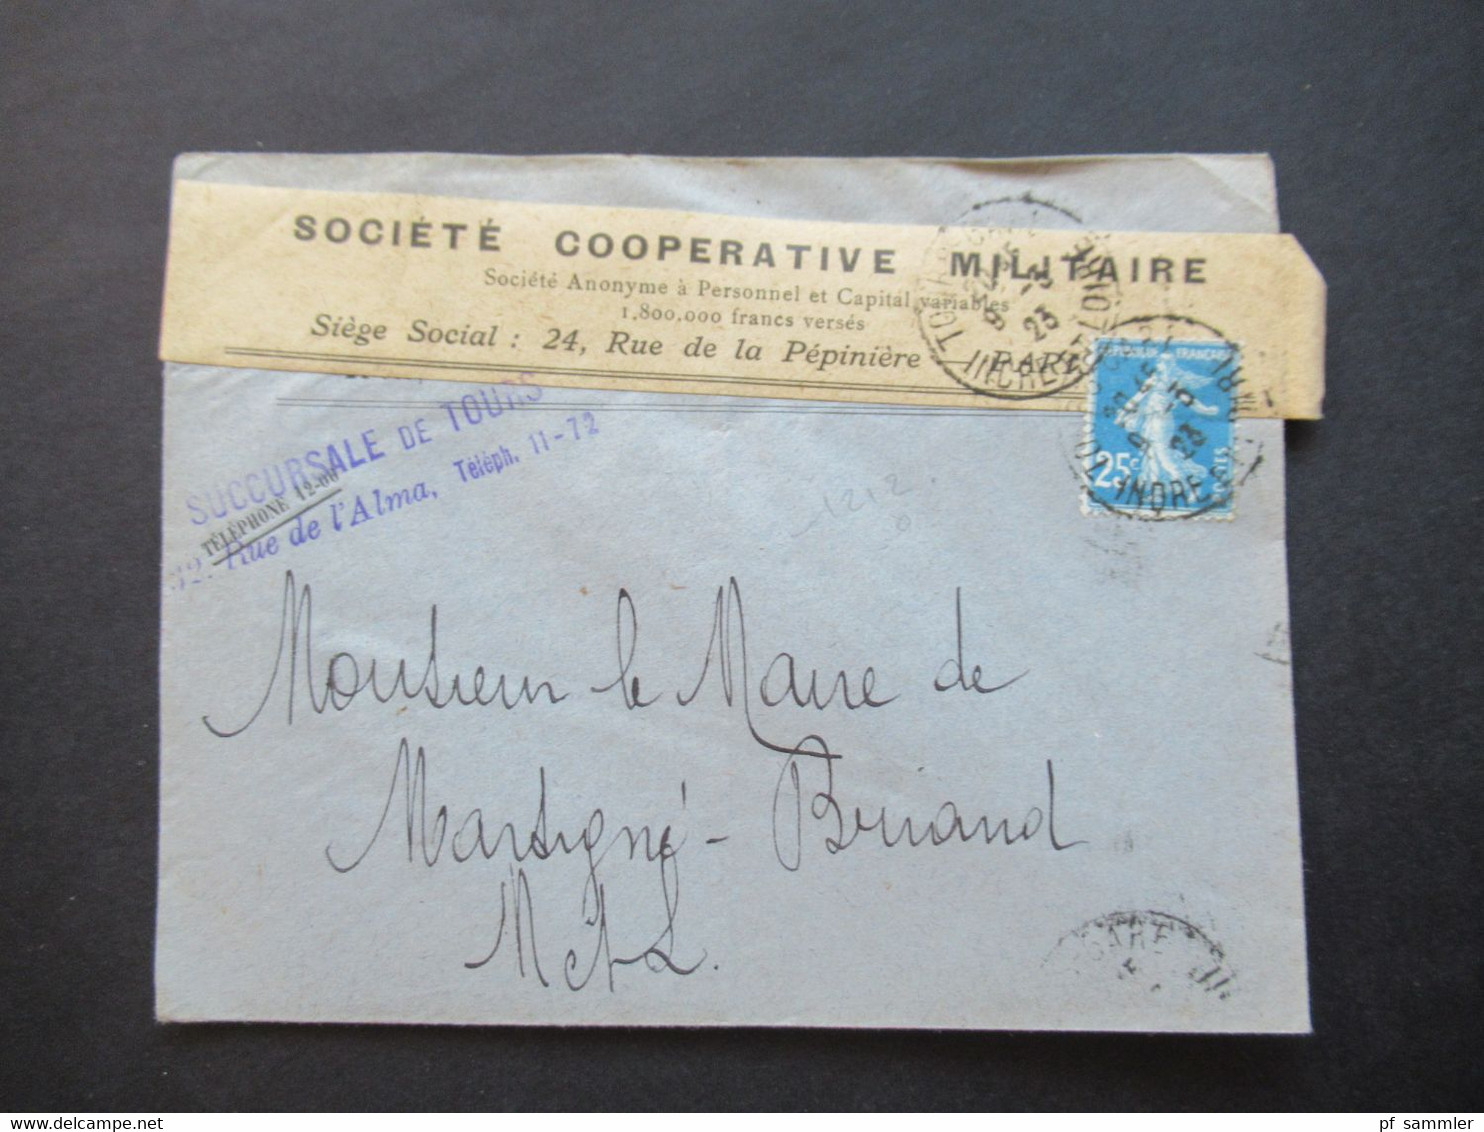 Frankreich 1923 Umschlag Mit Aufkleber Societe Cooperative Militaire / Stempel Succursale De Tours Rue De L'Alma - Storia Postale